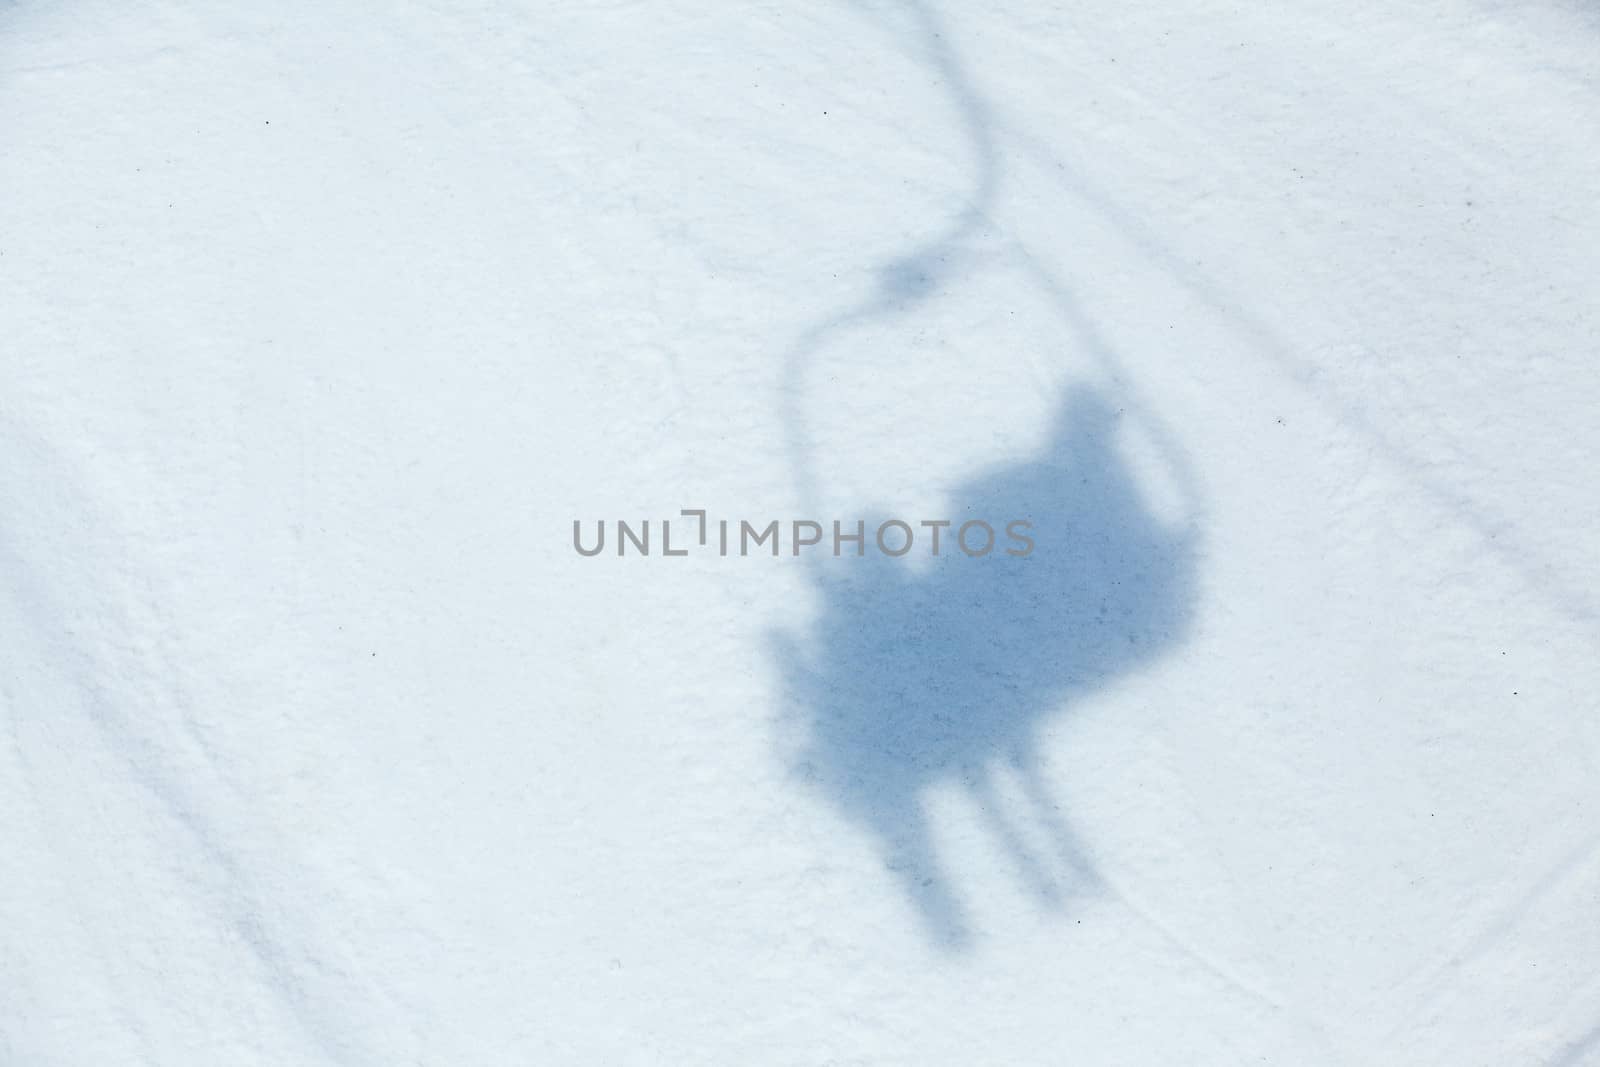 Ski lift shadow on the snow by maxoliki